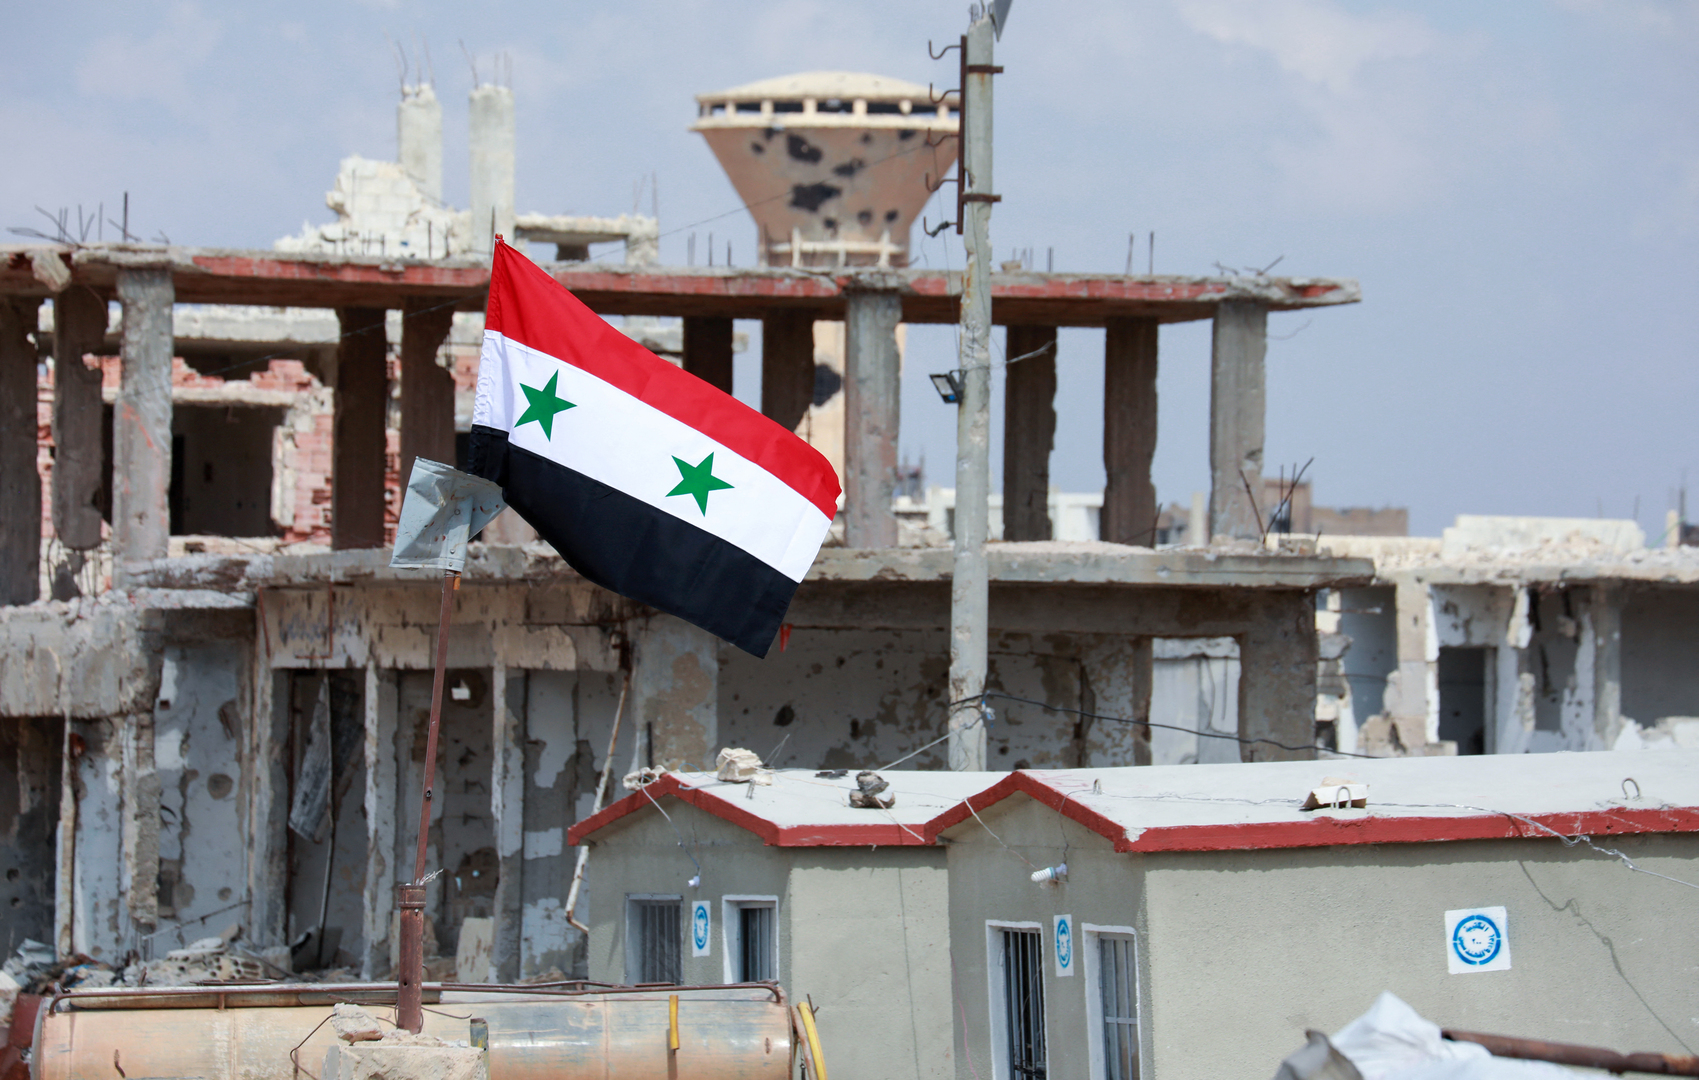 سوريا تقوم بتسوية أوضاع المطلوبين في ريف درعا بعد تسليمهم أسلحتهم